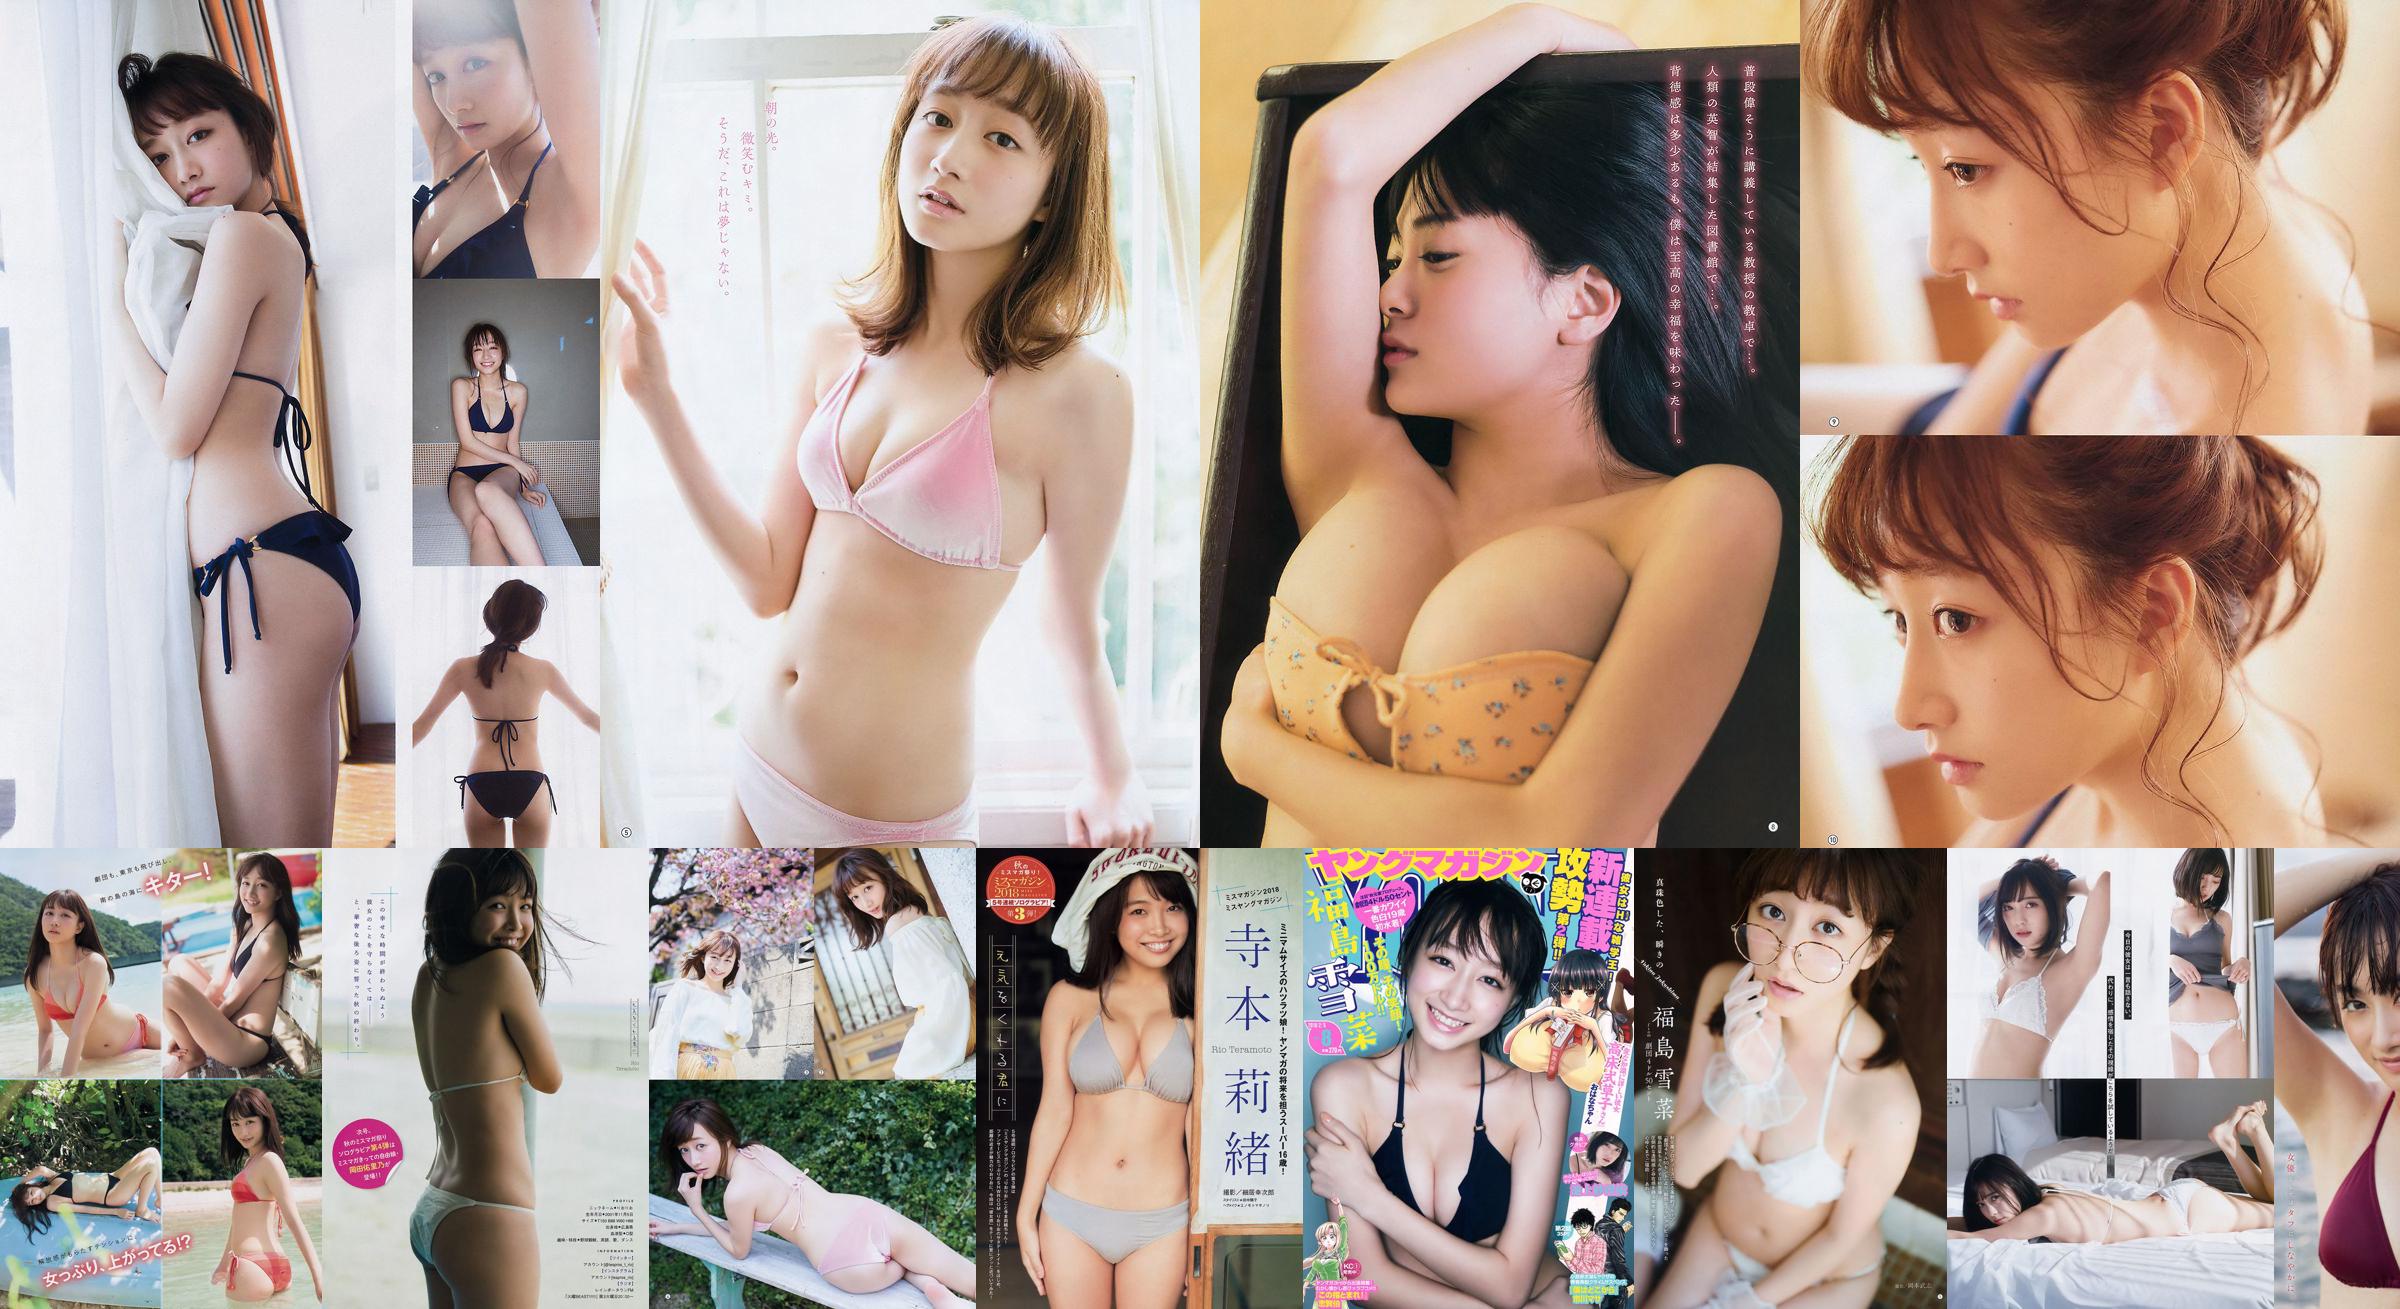 [Young Gangan] Yukina Fukushima RaMu 2018 No.10 Photograph No.6122e7 หน้า 1